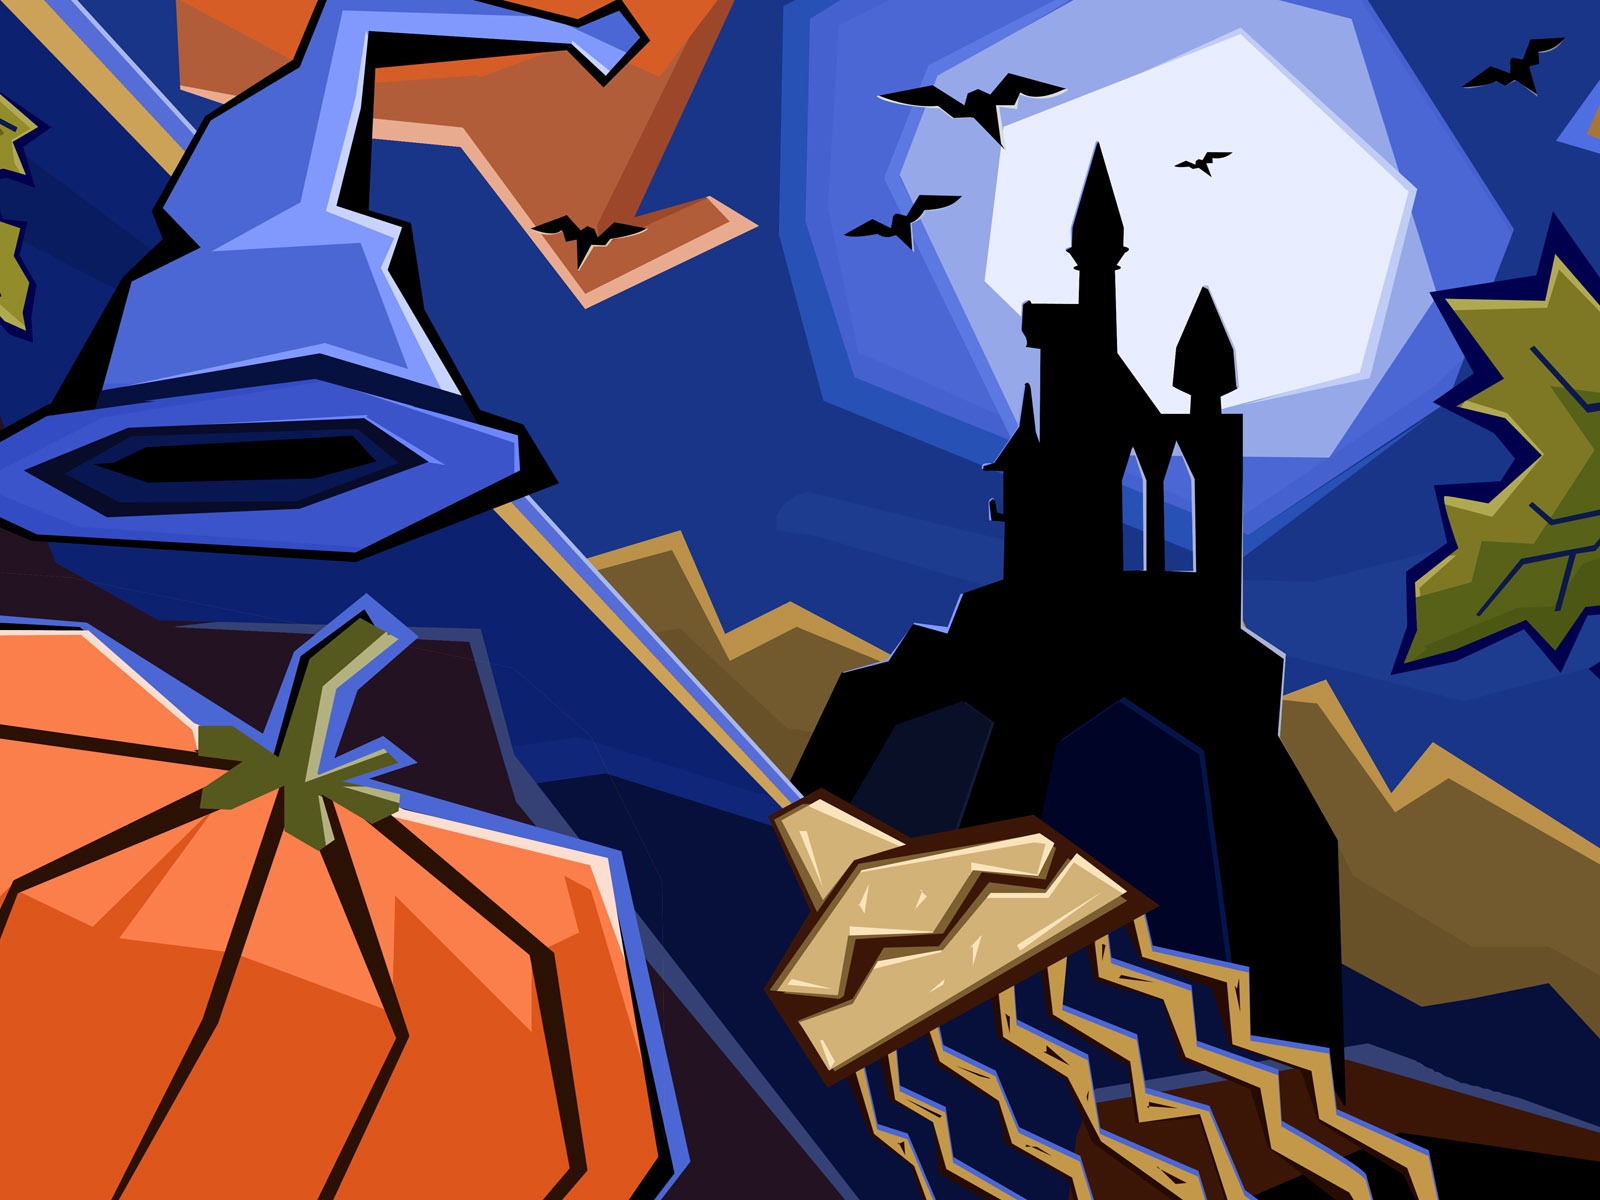 Fondos de Halloween temáticos (5) #20 - 1600x1200